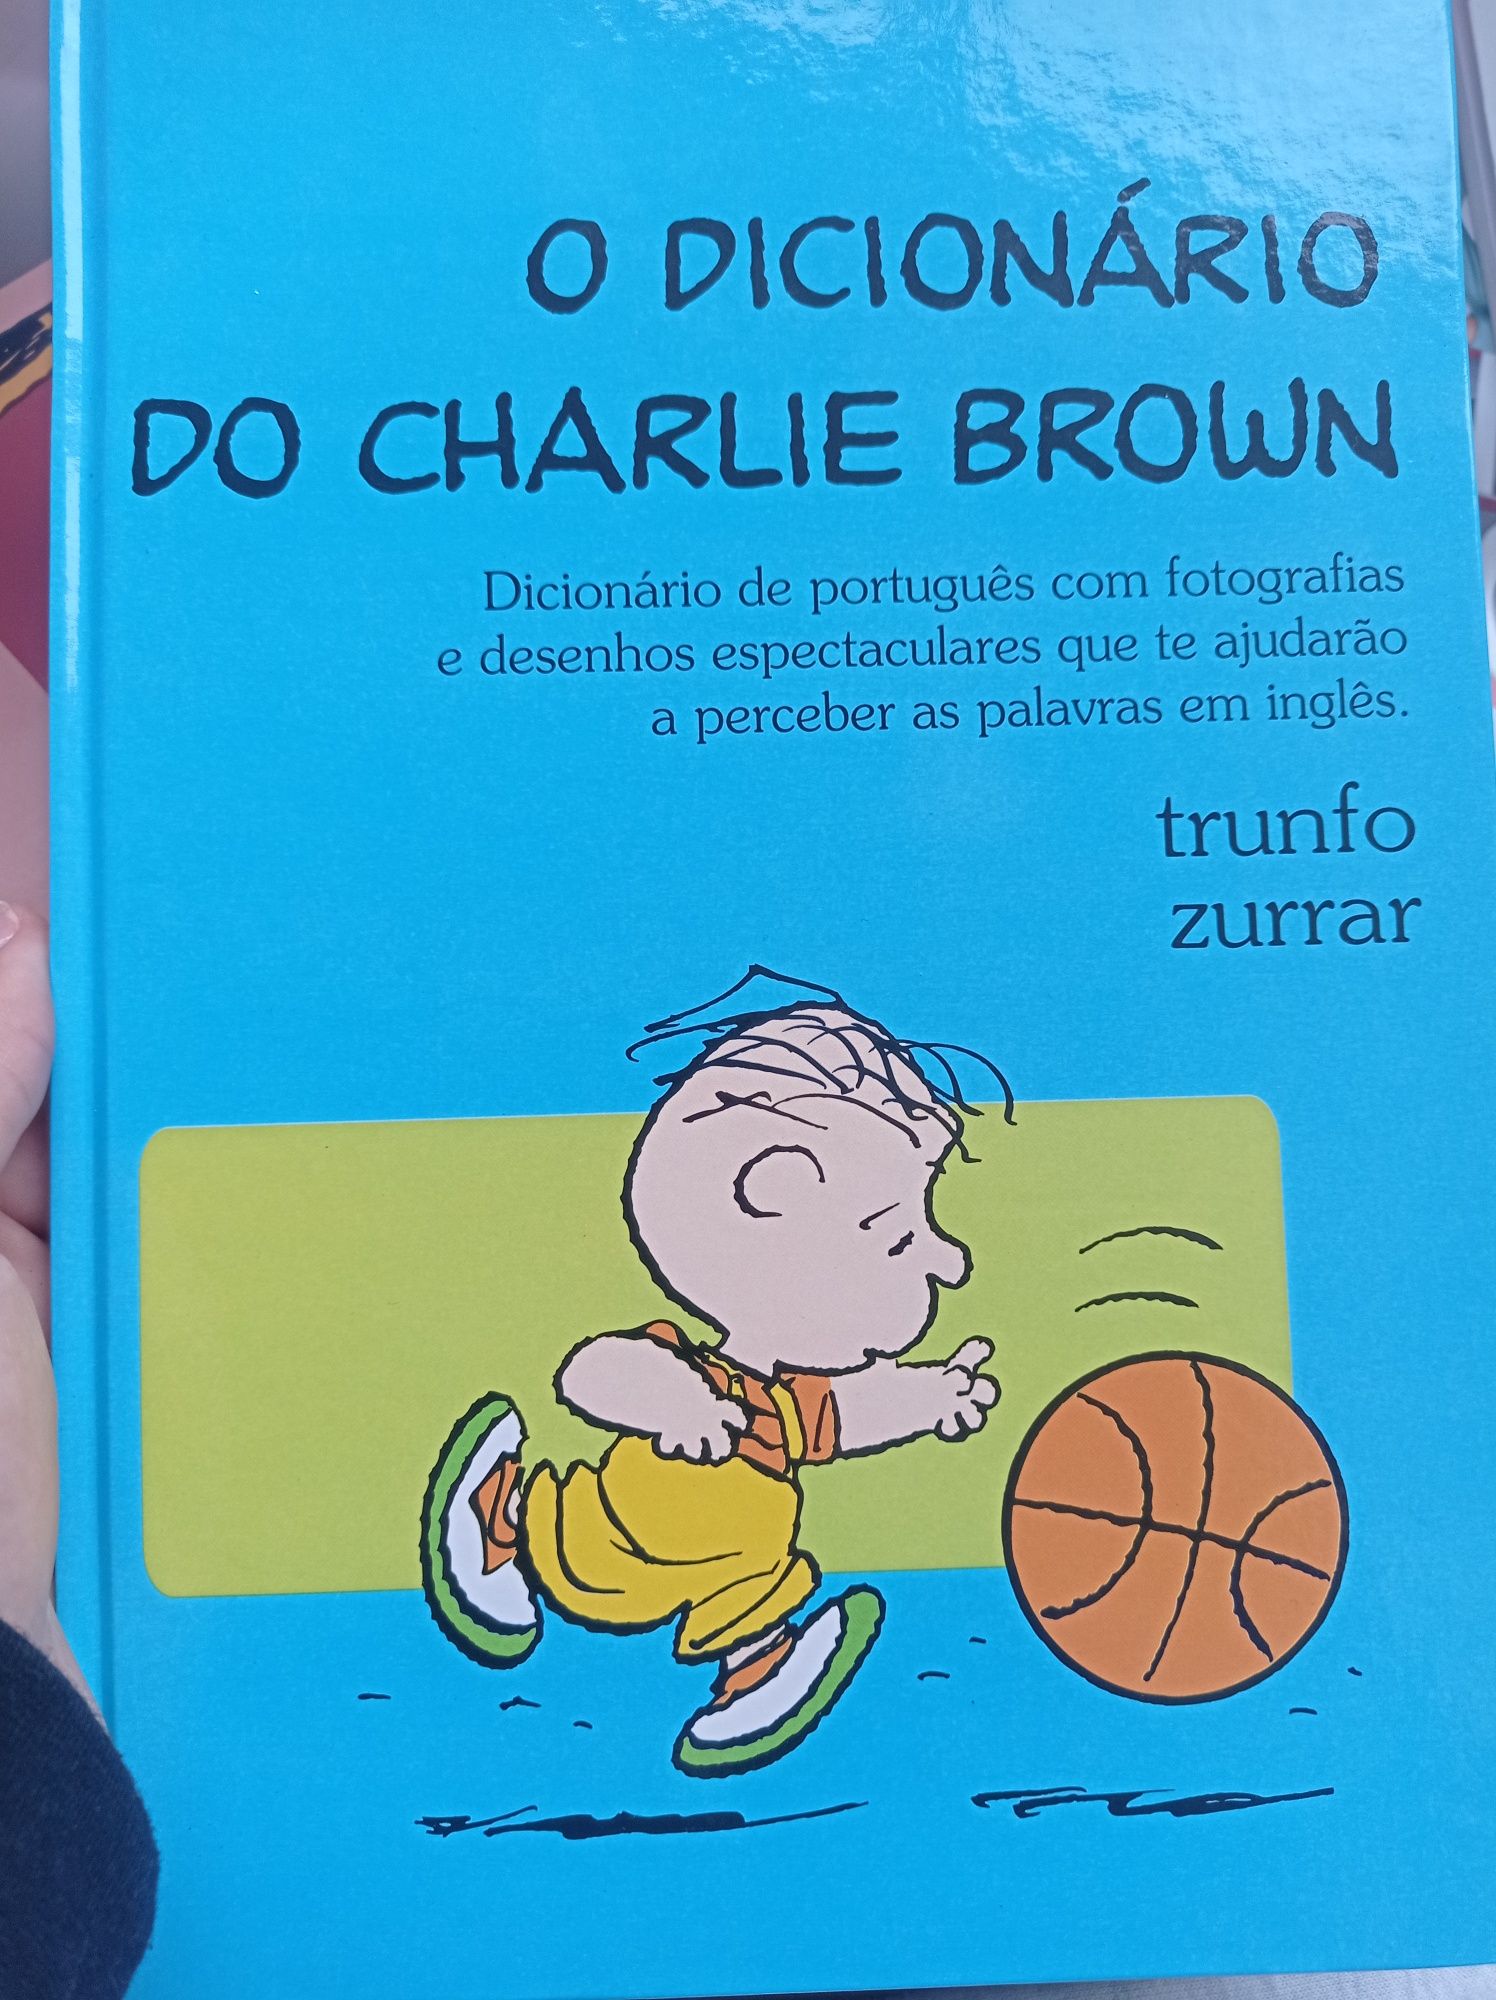 Coleção toda dos Dicionários do Charlie Brown